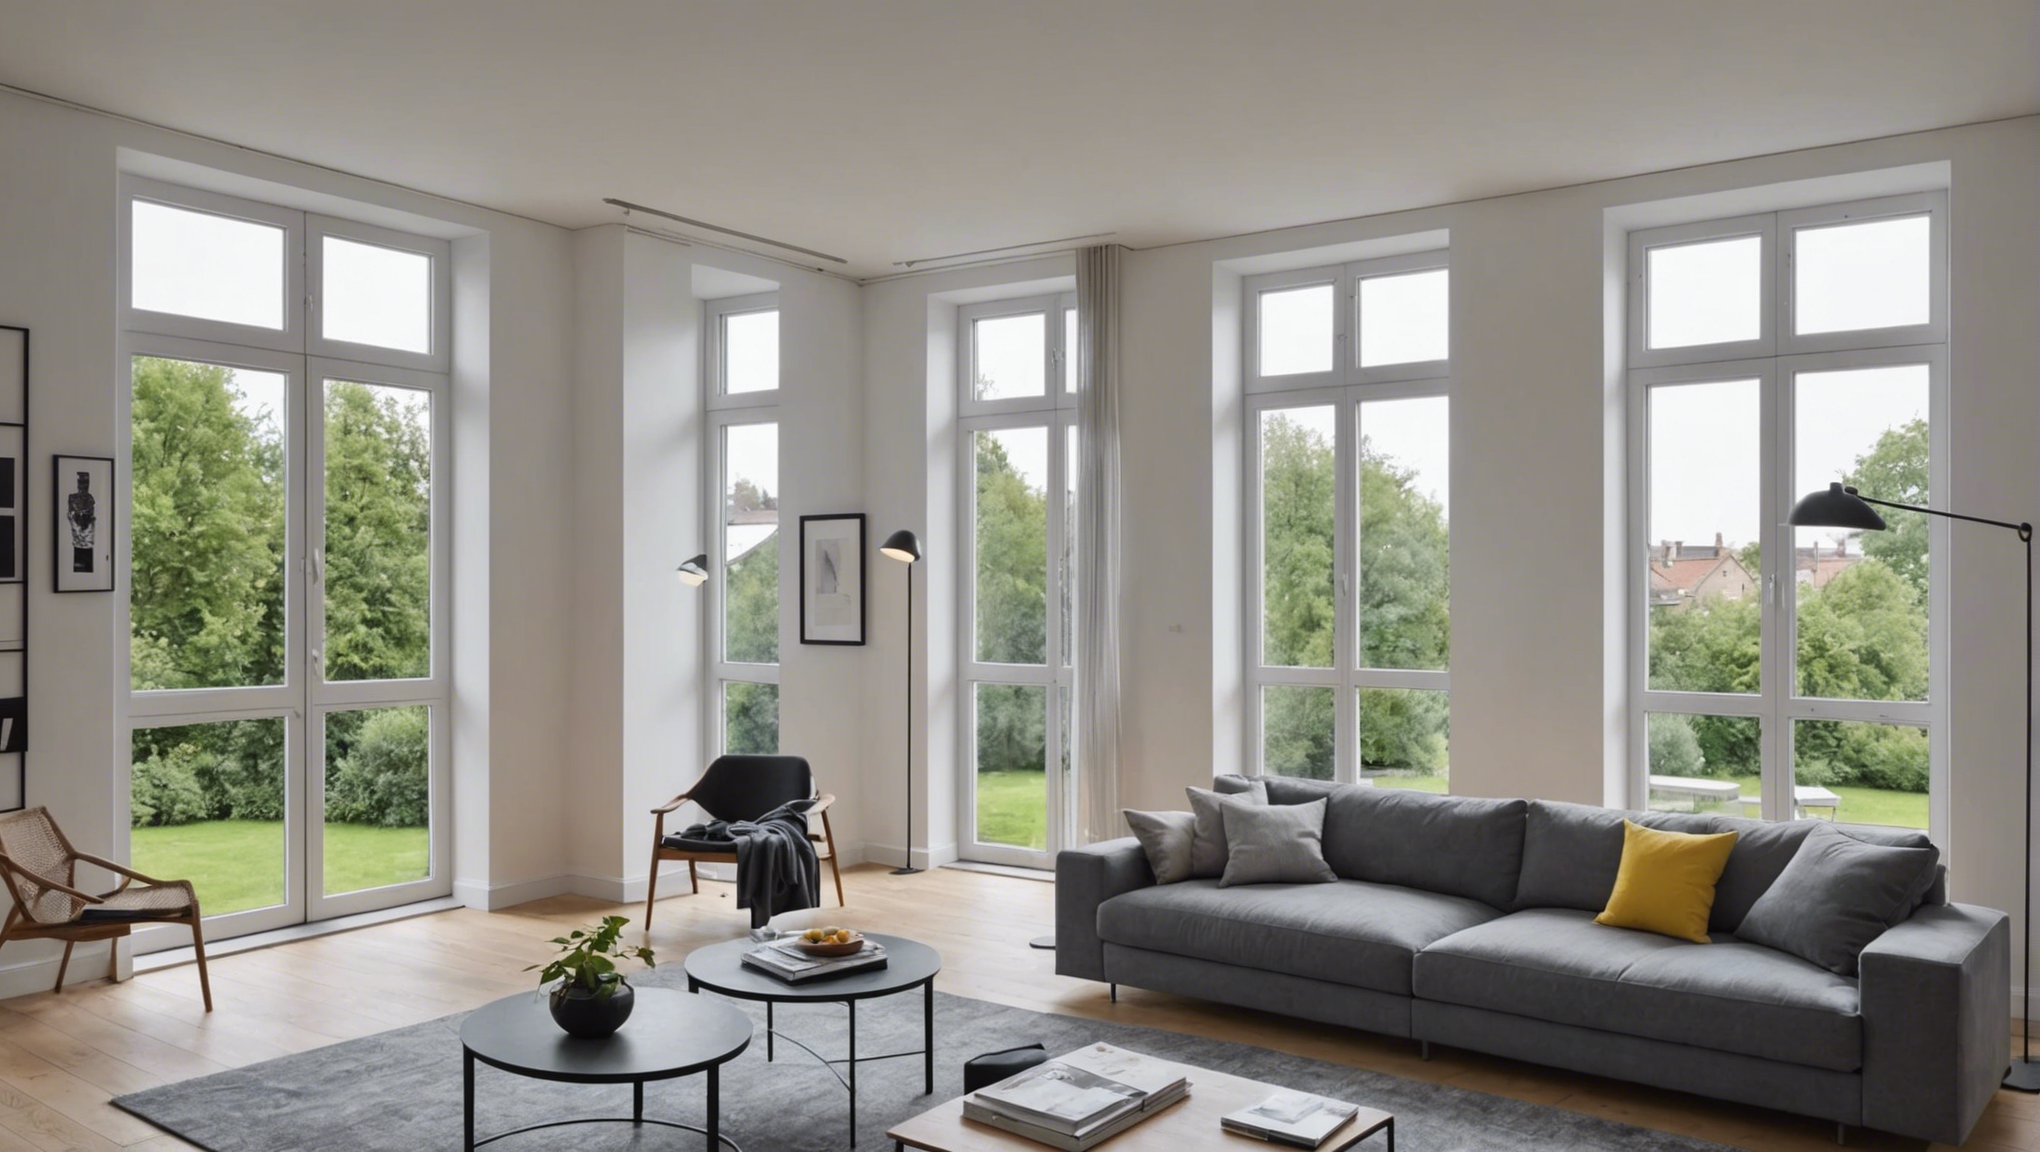 découvrez nos conseils pour choisir le parfait appui de fenêtre qui s'adaptera à votre intérieur et rehaussera votre décoration avec élégance.